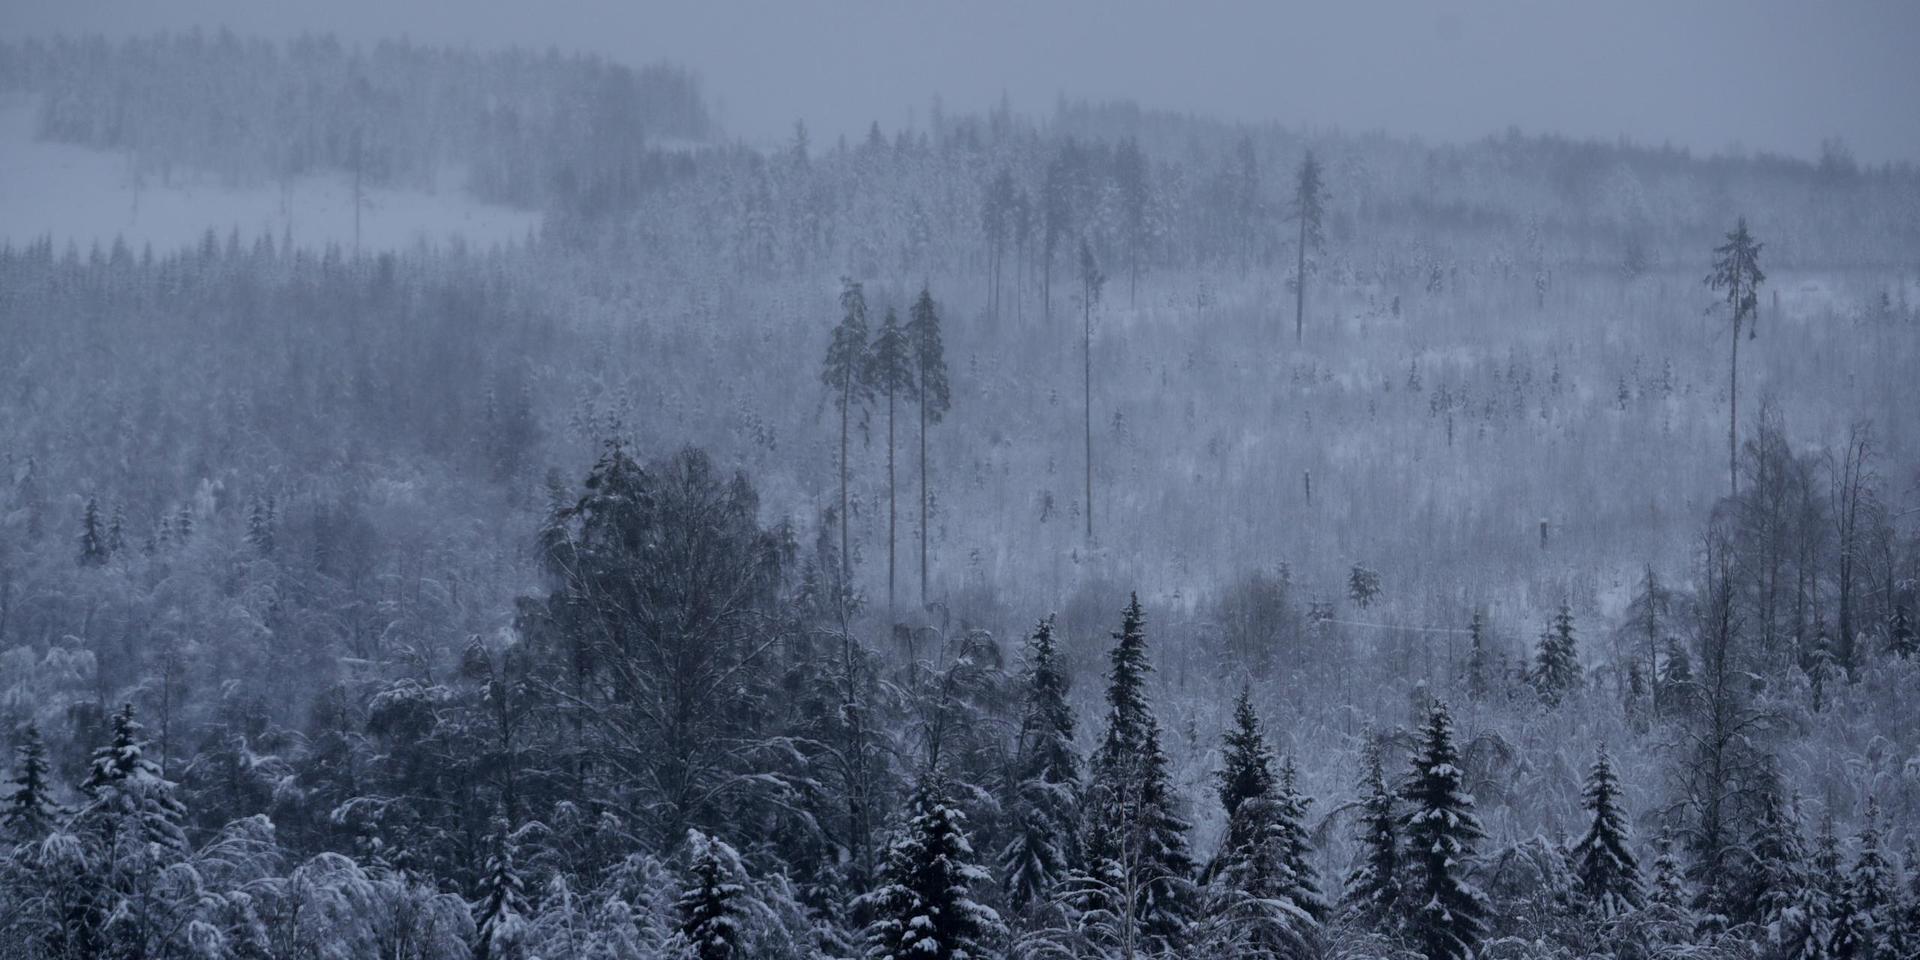 Med Miljöpartiet i regering har den äganderätt som gjorde svensk skogspolitik så framgångsrik försvagats.